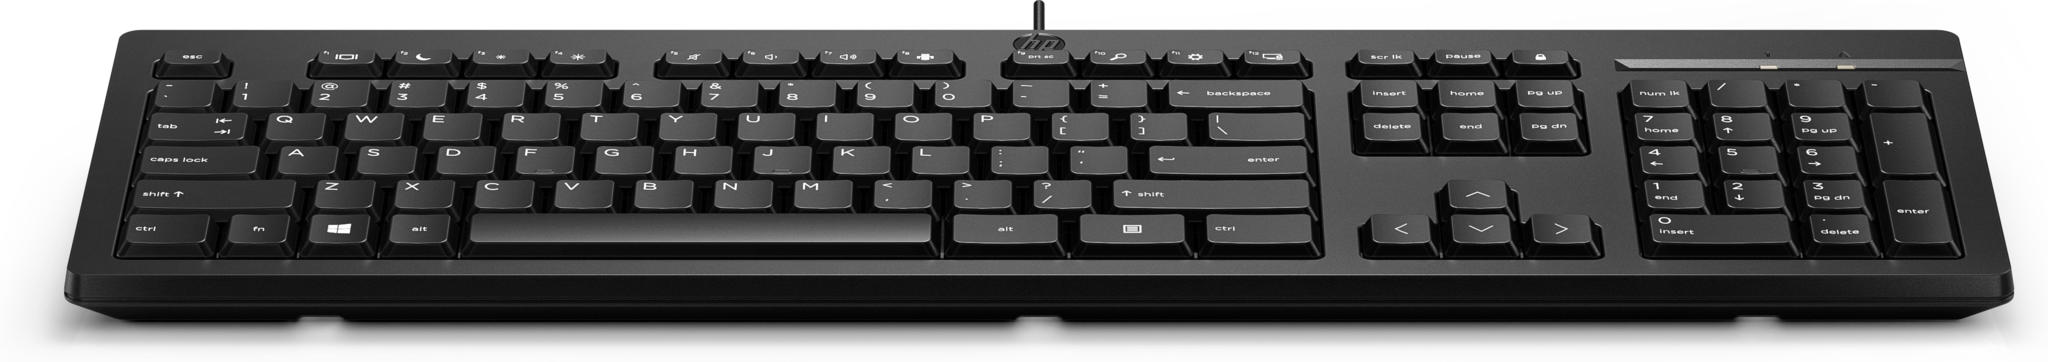 Aanbieding Toetsenborden. HP 125 toetsenbord zwart